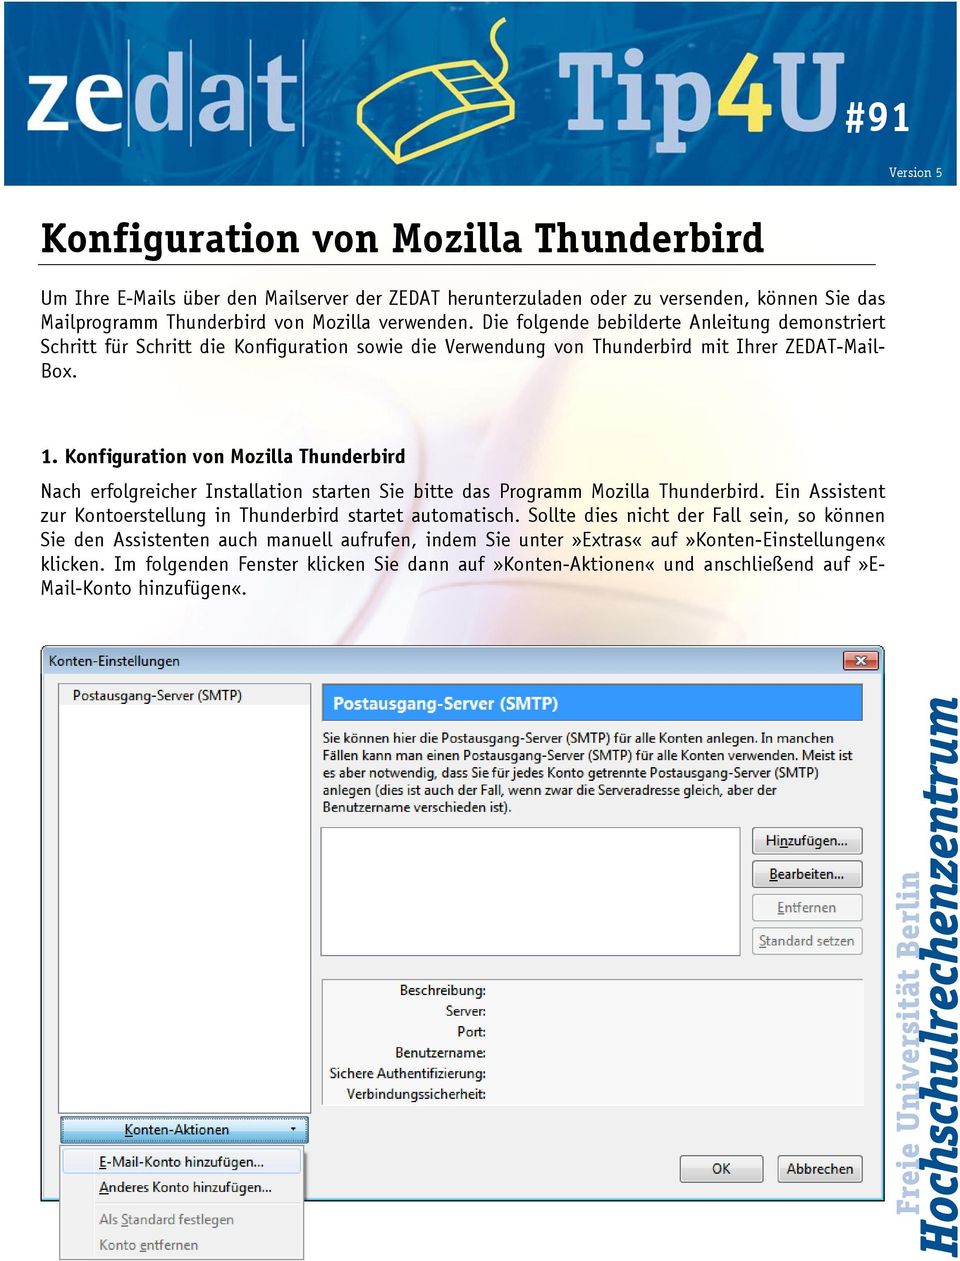 Nach erfolgreicher Installation starten Sie bitte das Programm Mozilla Thunderbird. Ein Assistent zur Kontoerstellung in Thunderbird startet automatisch.